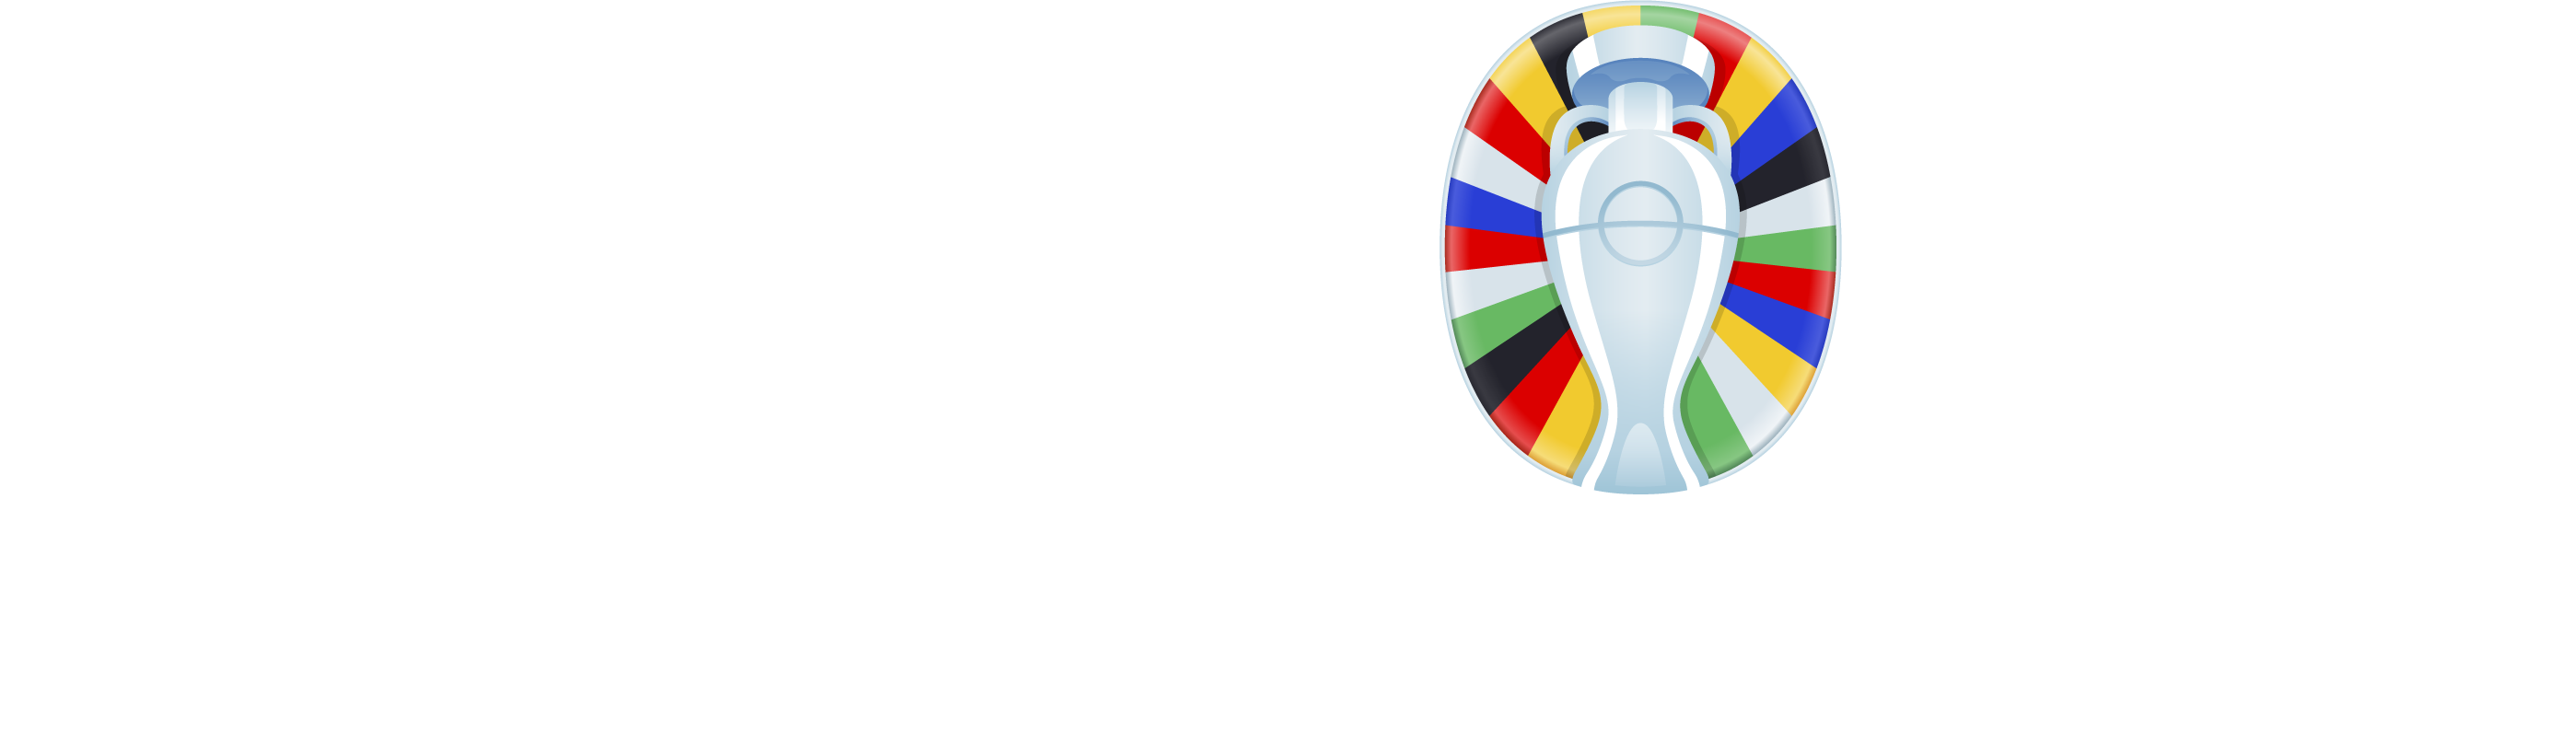 Официальный партнер UEFA EURO 2020